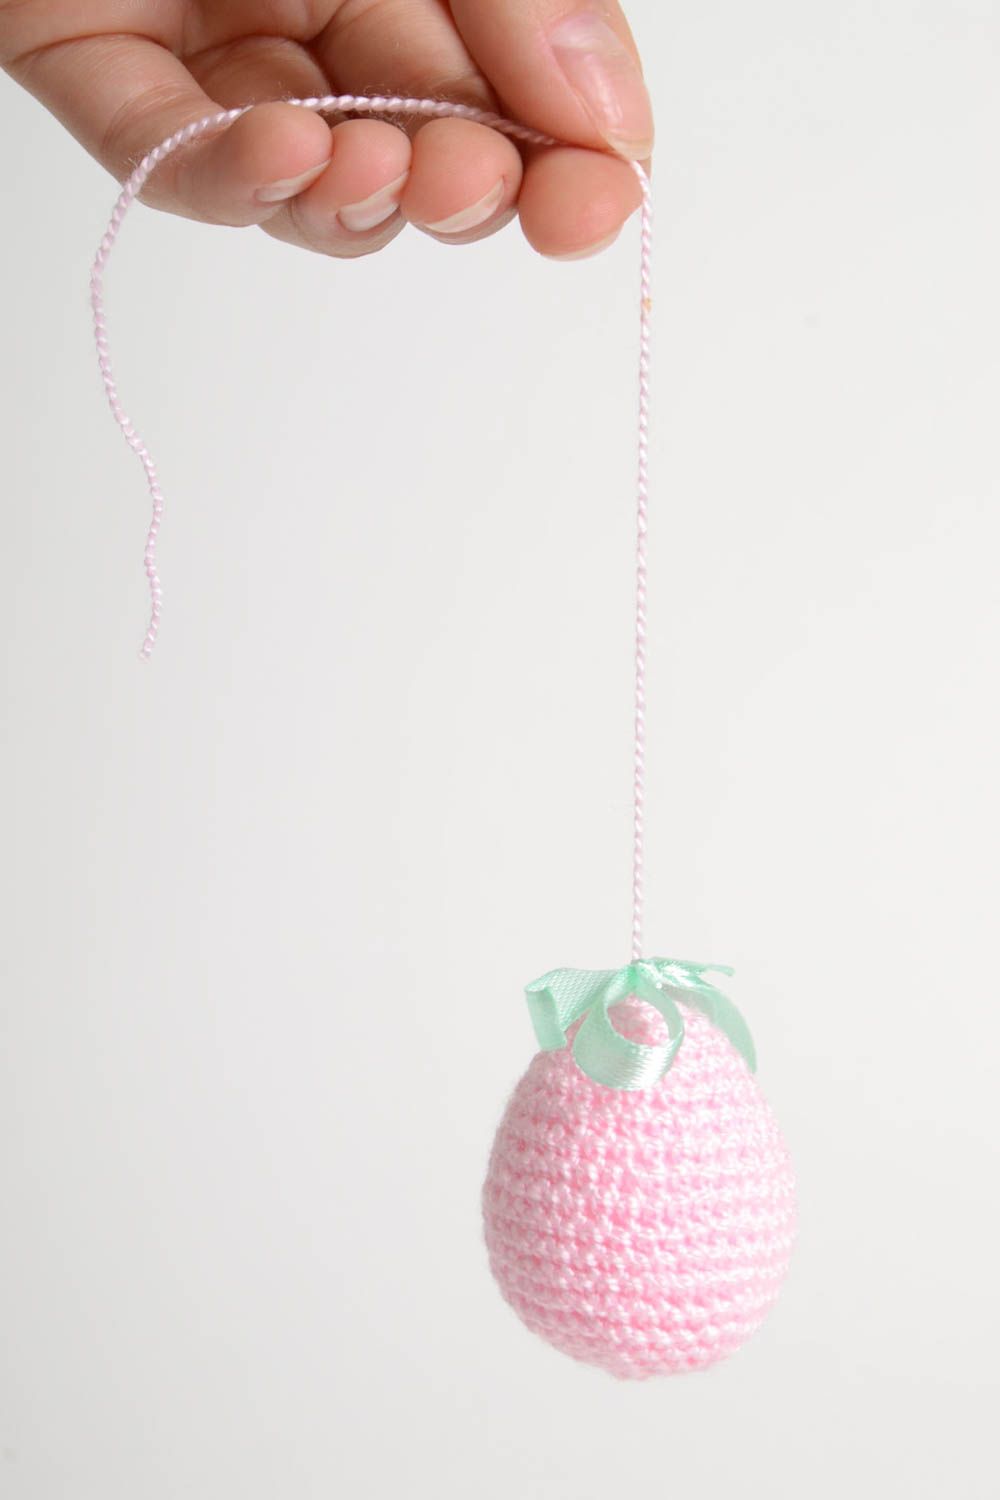 Unusual handmade decorative Easter egg crochet soft Easter egg home design photo 5